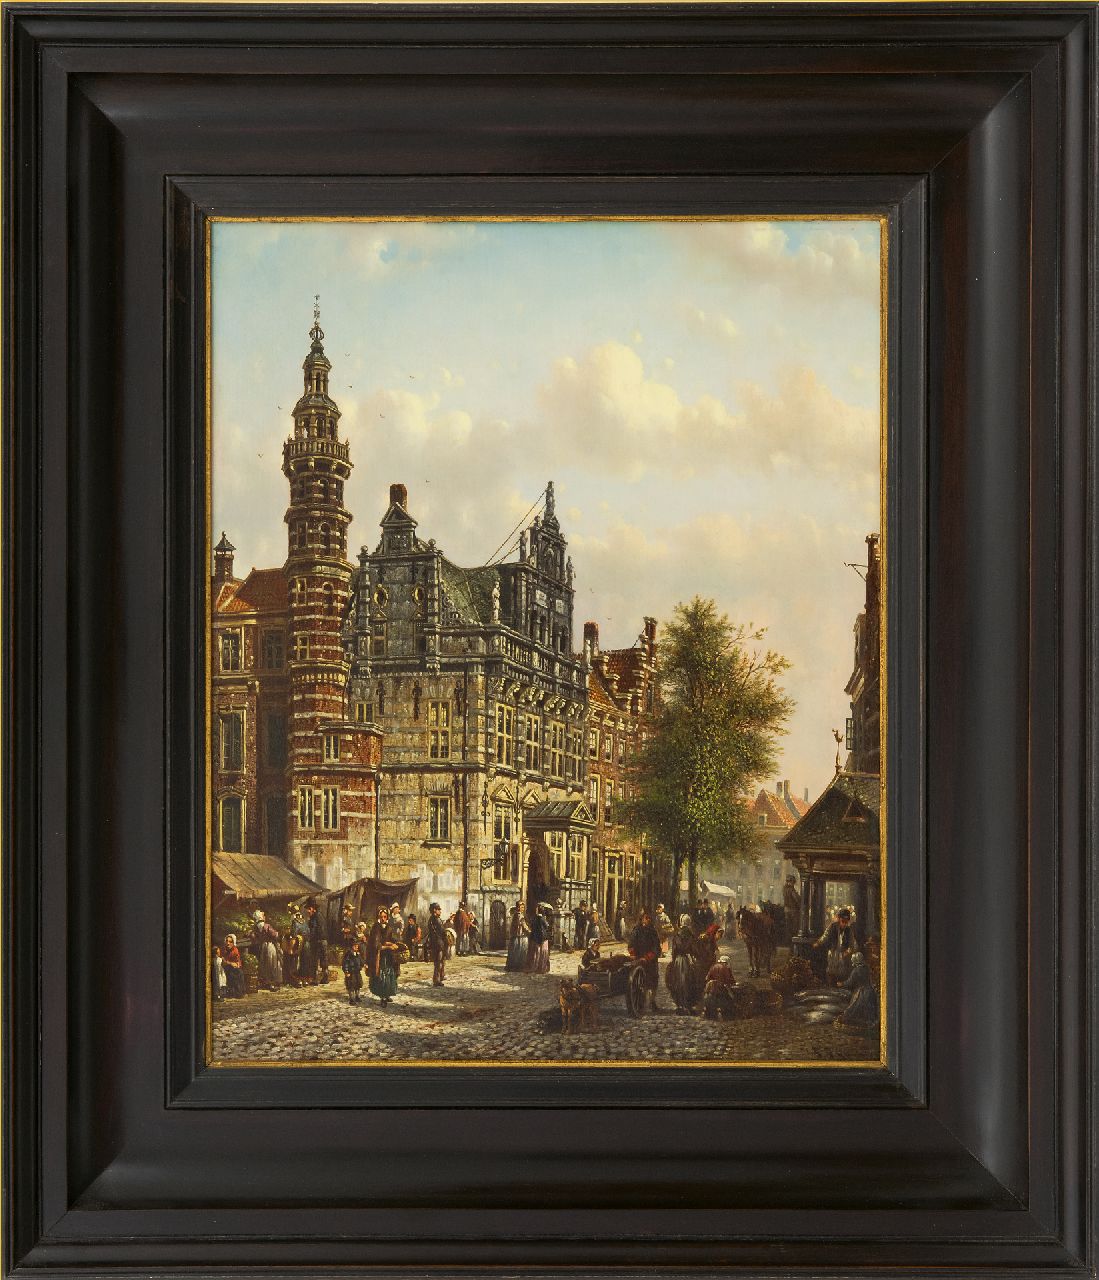 Spohler J.F.  | Johannes Franciscus Spohler | Schilderijen te koop aangeboden | Het Oude Stadhuis van Den Haag aan de Groenmarkt, olieverf op paneel 40,0 x 32,9 cm, gesigneerd rechtsonder